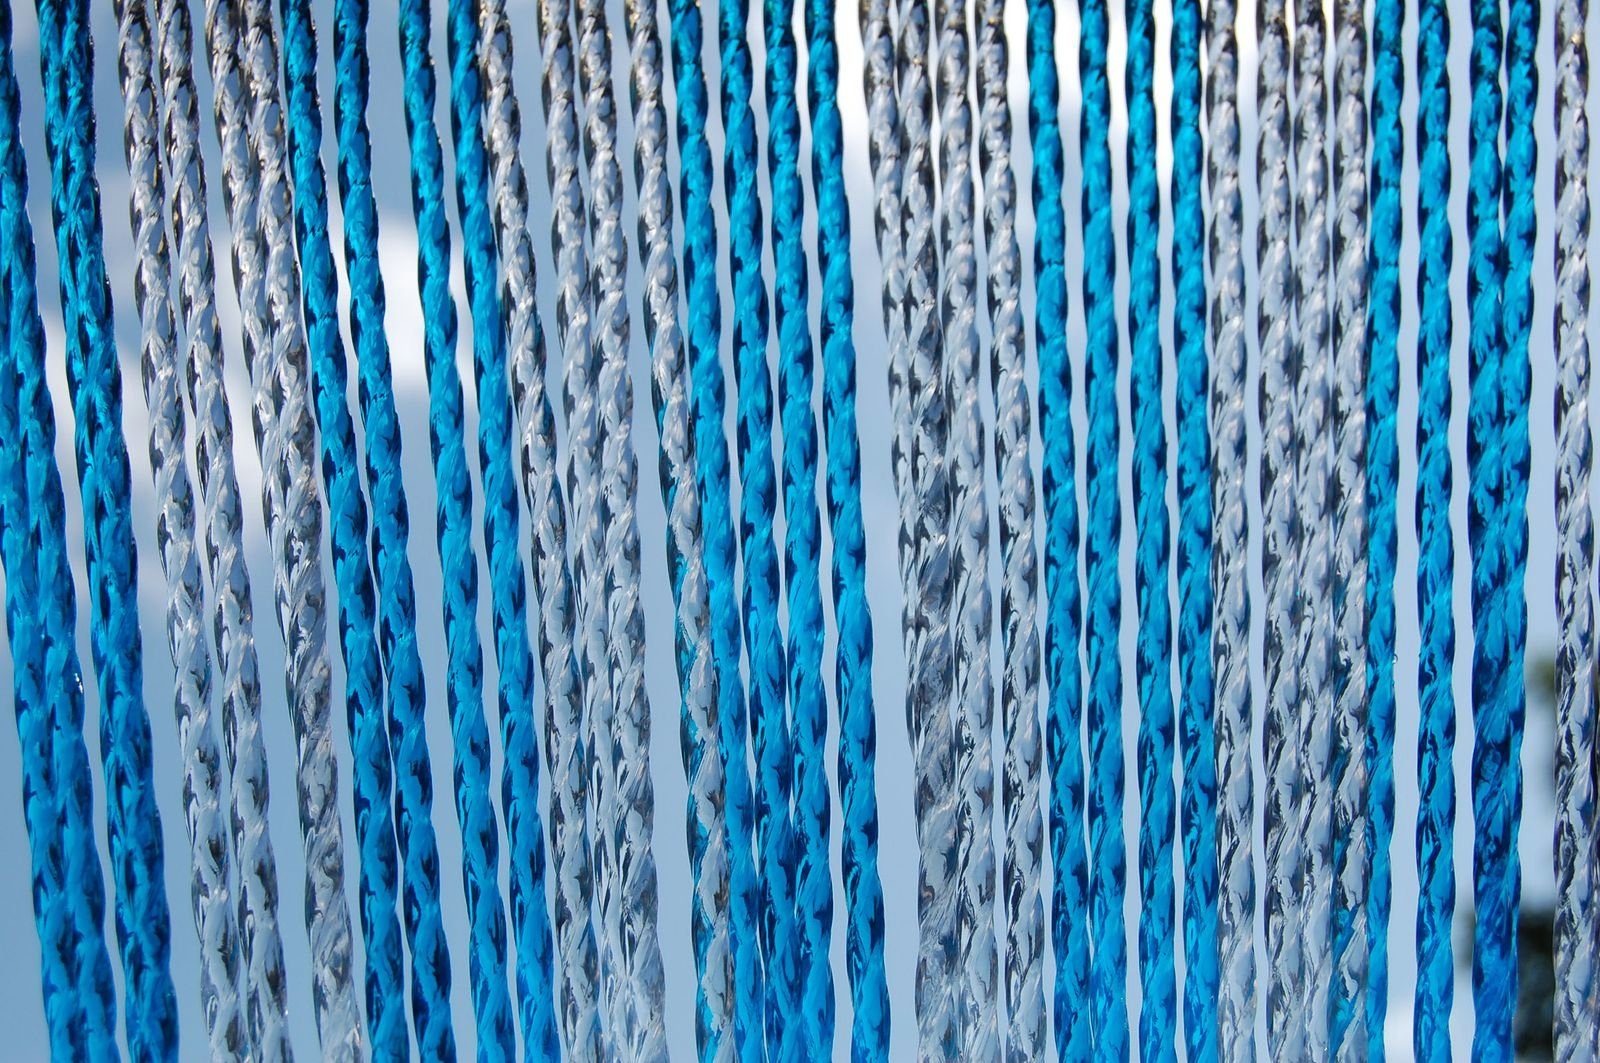 La Tenda Insektenschutz-Vorhang La Tenda RIMINI 3 Streifenvorhang blau, 90 x 210 cm, PVC - Länge und Breite individuell kürzbar